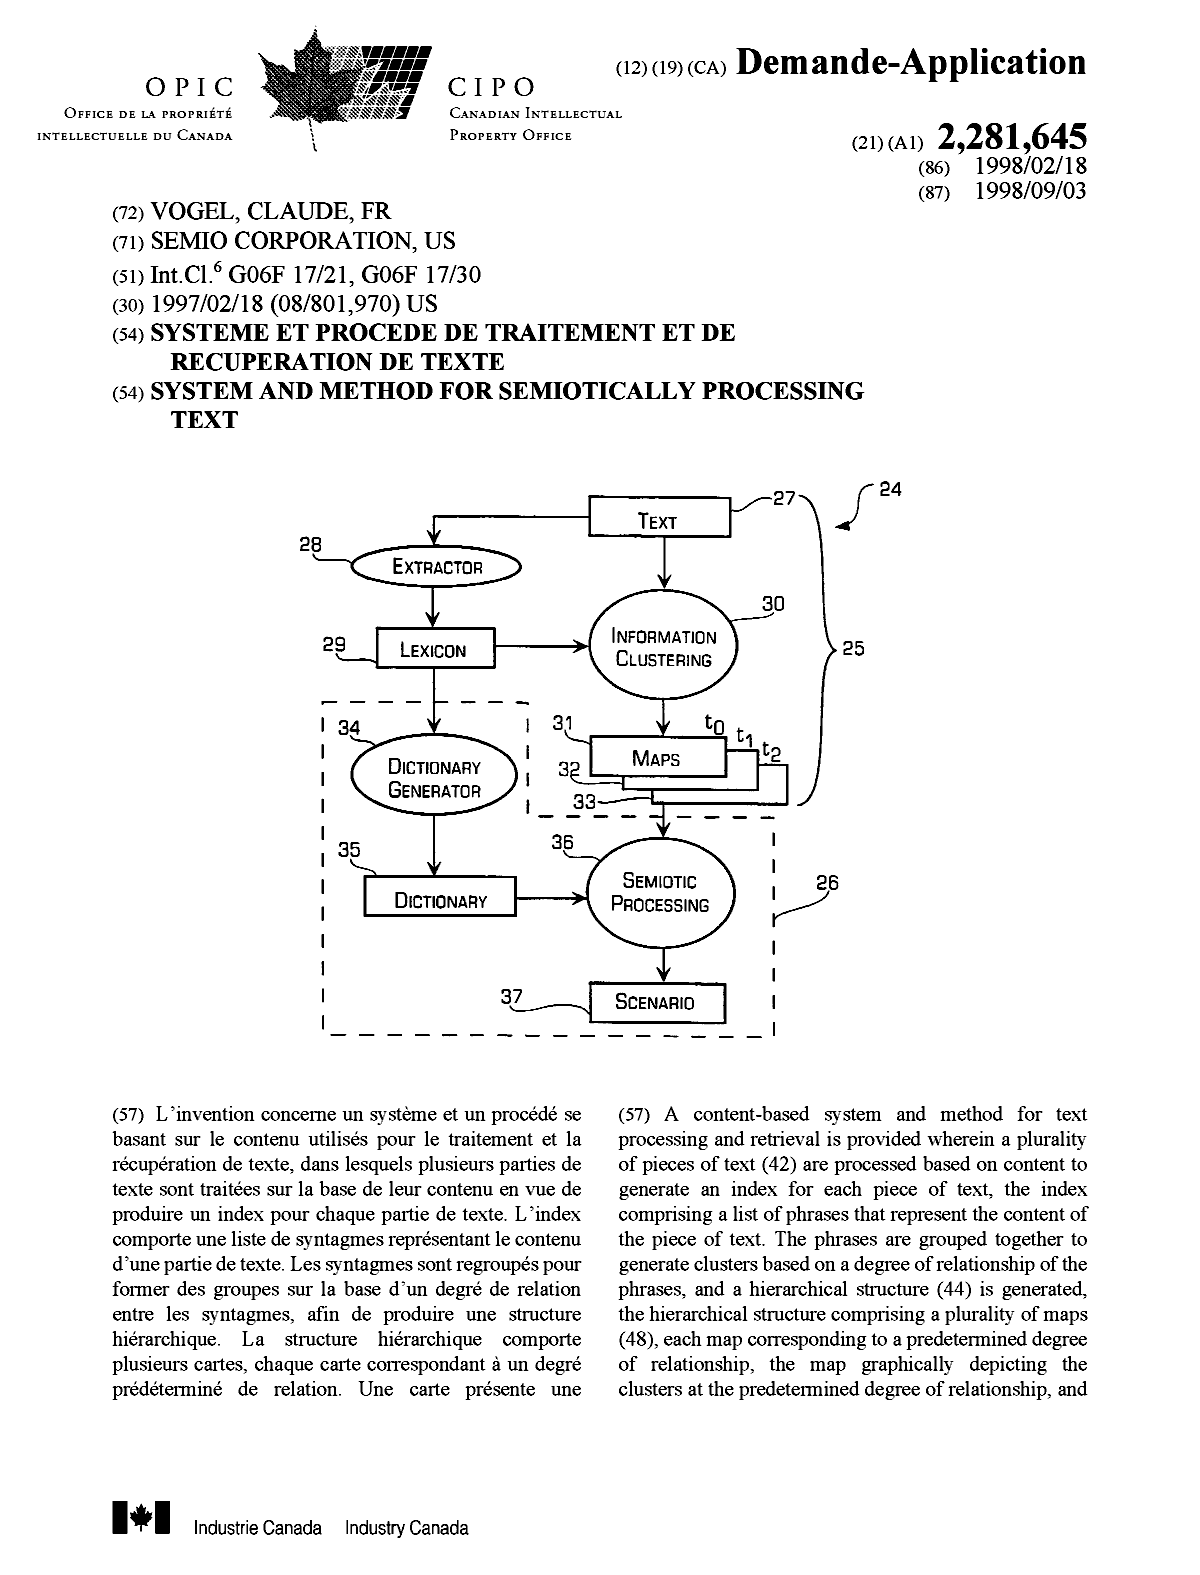 Document de brevet canadien 2281645. Page couverture 19991021. Image 1 de 2